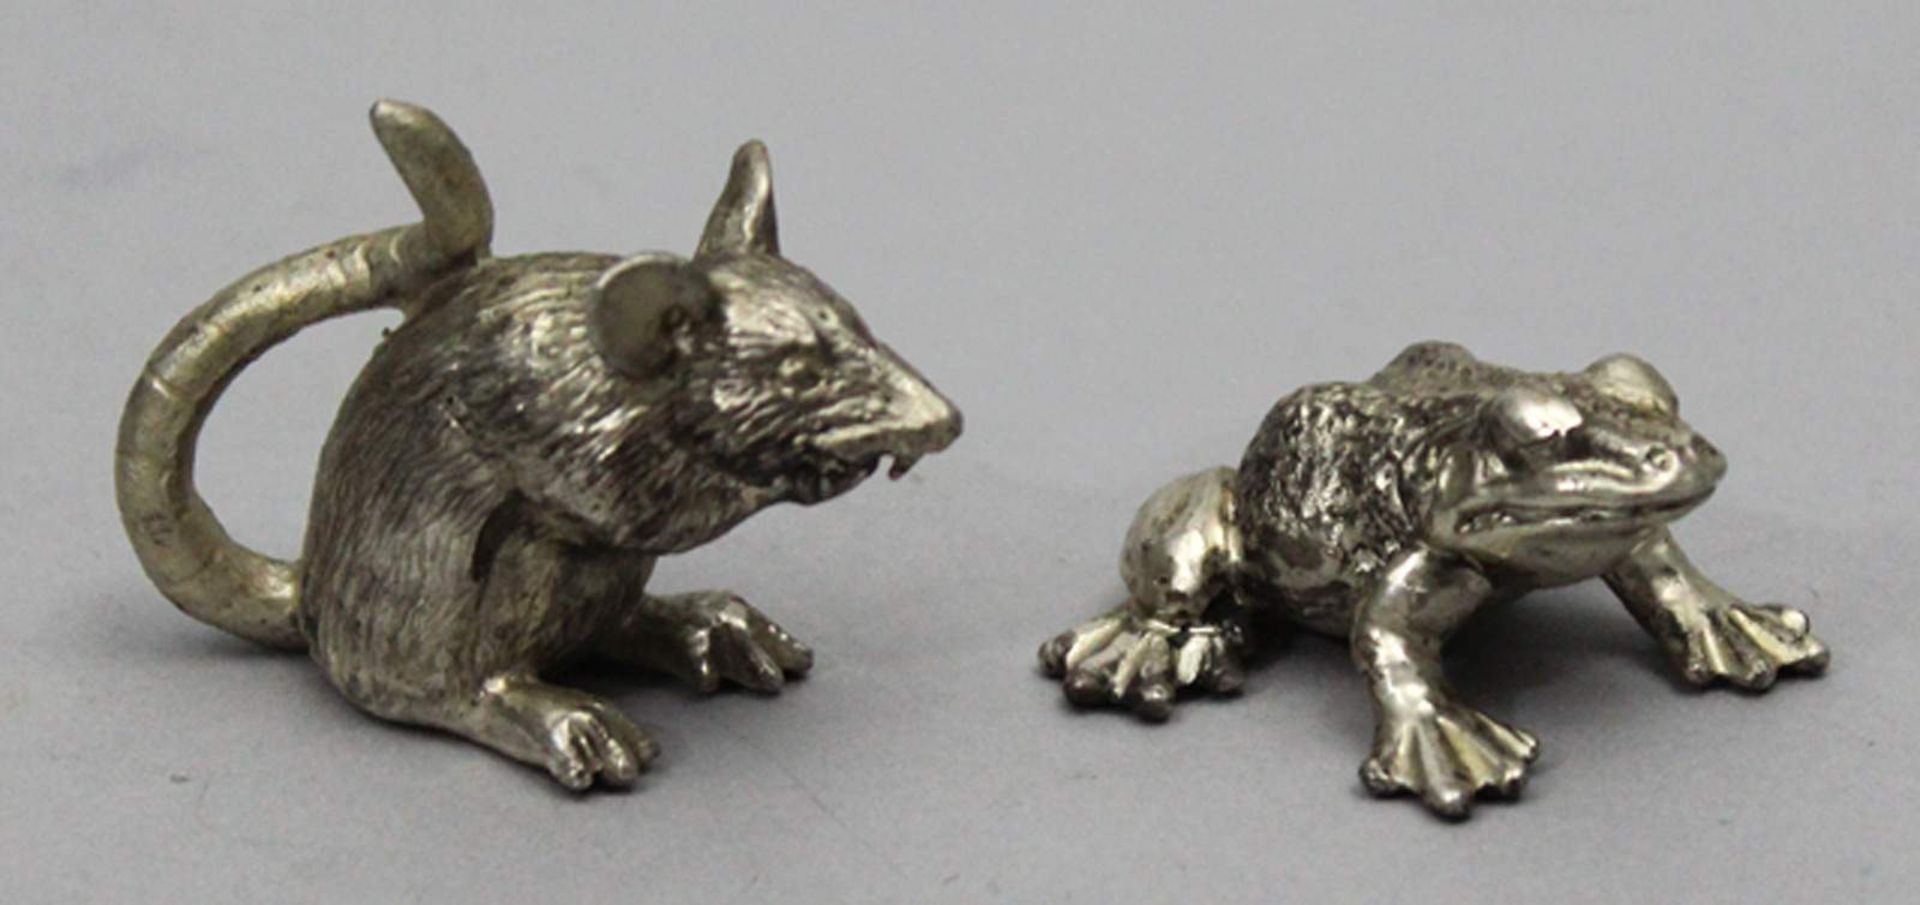 Zwei Tierskulpturen einer Ratte bzw. eines Froschs.Massives 935/000 Silber, zus. 118 g. Ziselierte